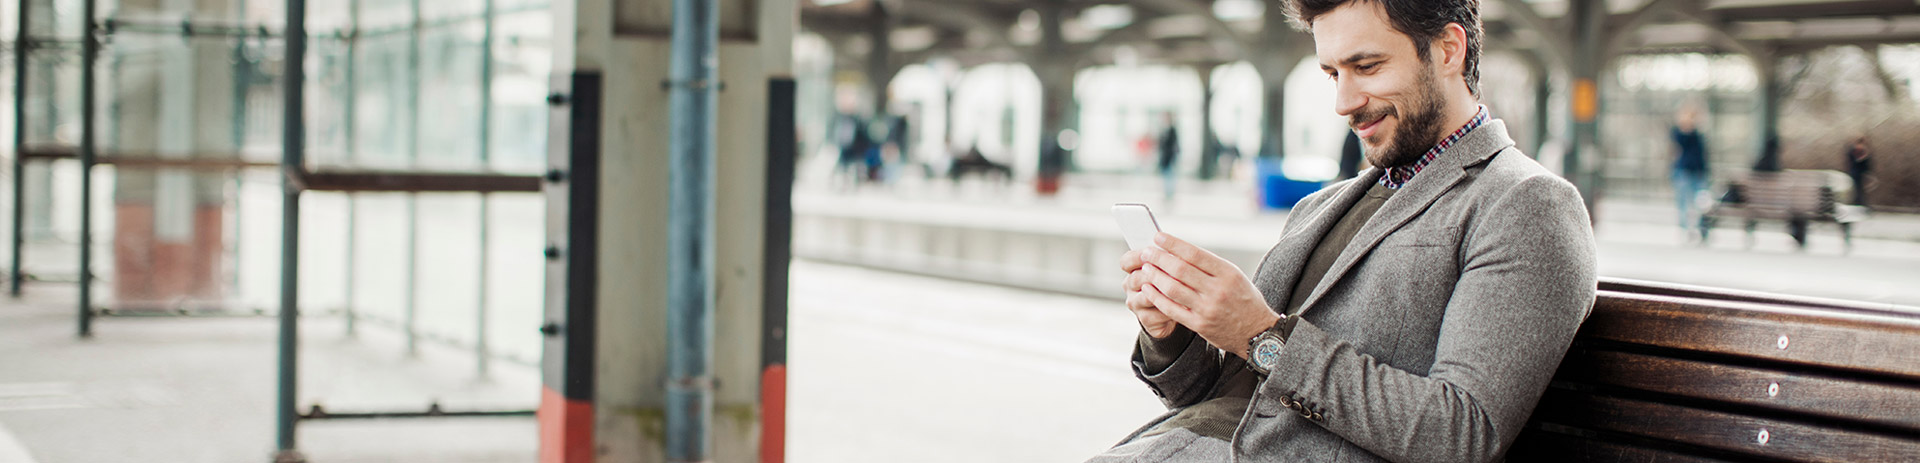 Mann sitzt am Bahnhof auf einer Bank und benutzt ein Smartphone